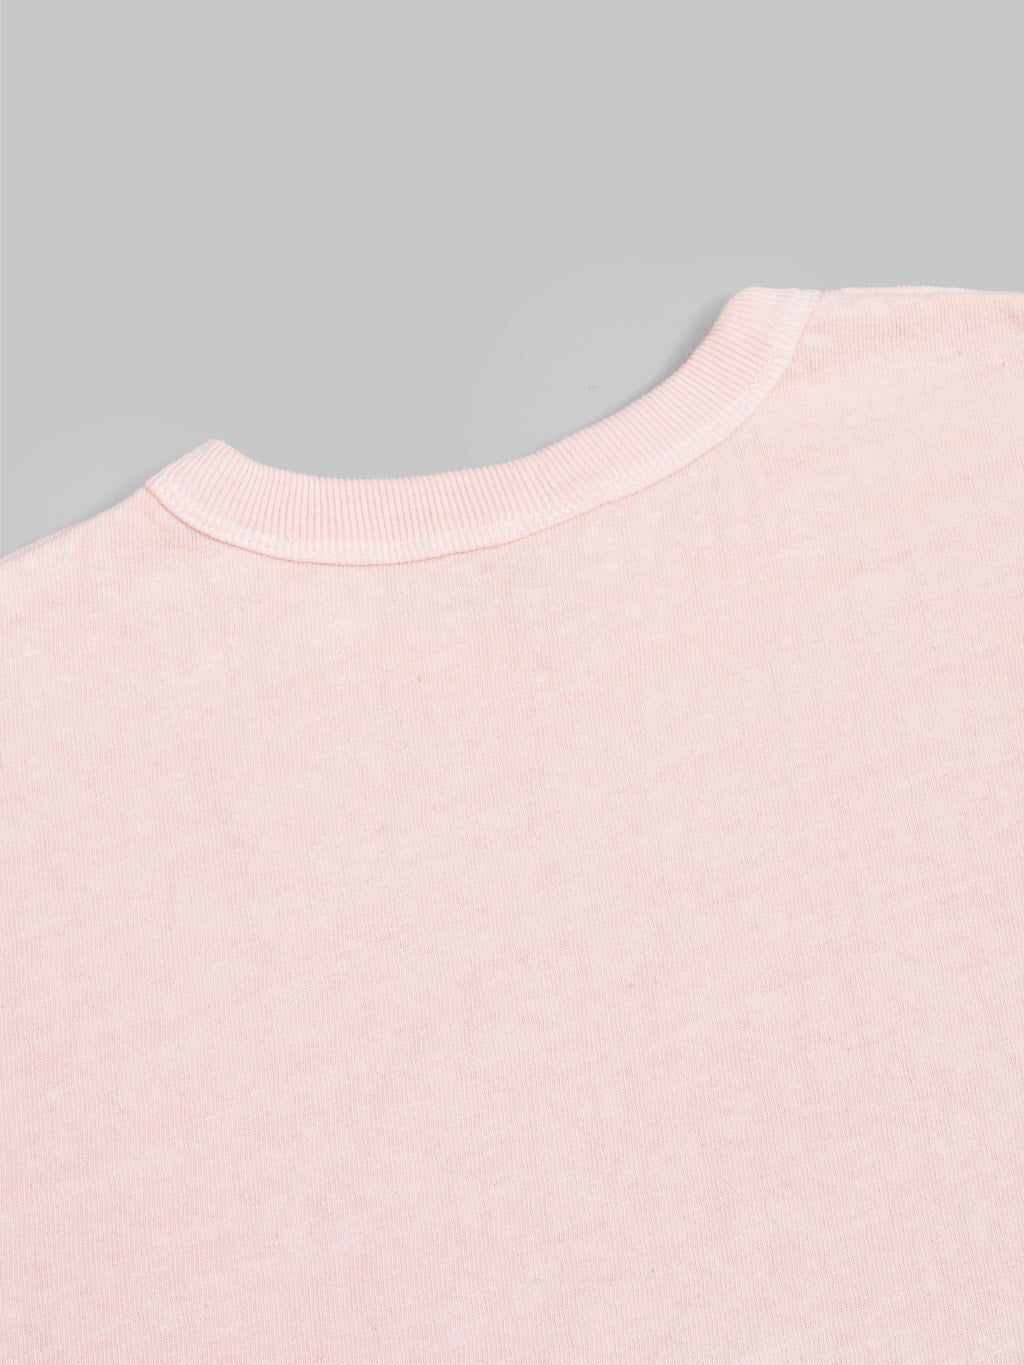 UES N8 Slub Nep Short Sleeve TShirt pink  stitching